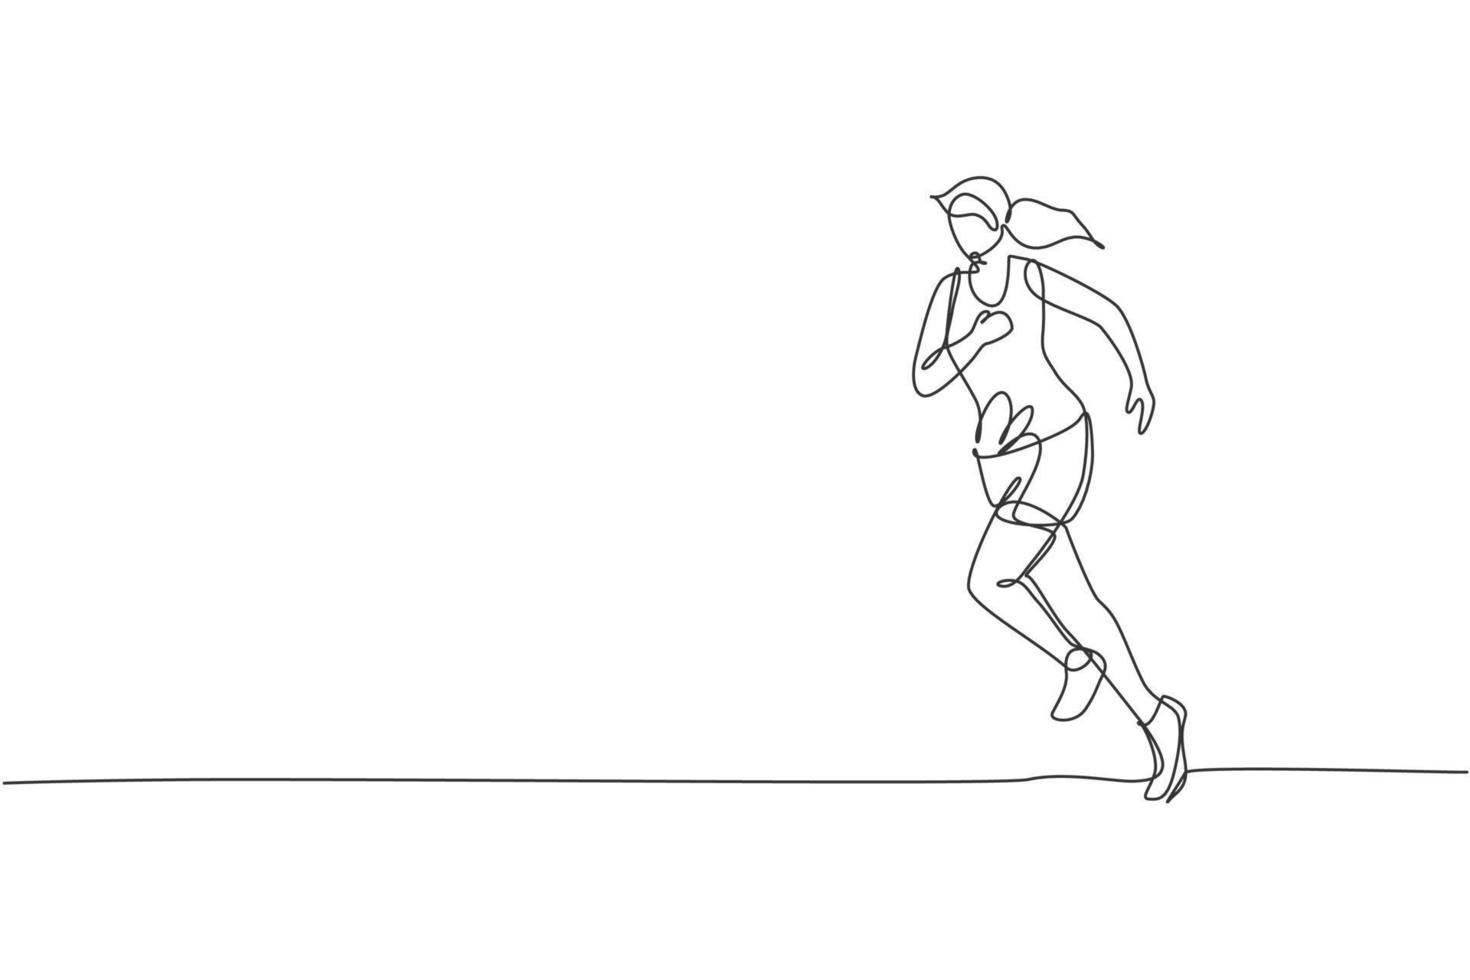 enda kontinuerlig linjeteckning av ung smidig kvinna löpare kör slappna av. individuell sport med tävlingskoncept. trendiga en rad rita design vektor illustration för att köra turnering marknadsföring